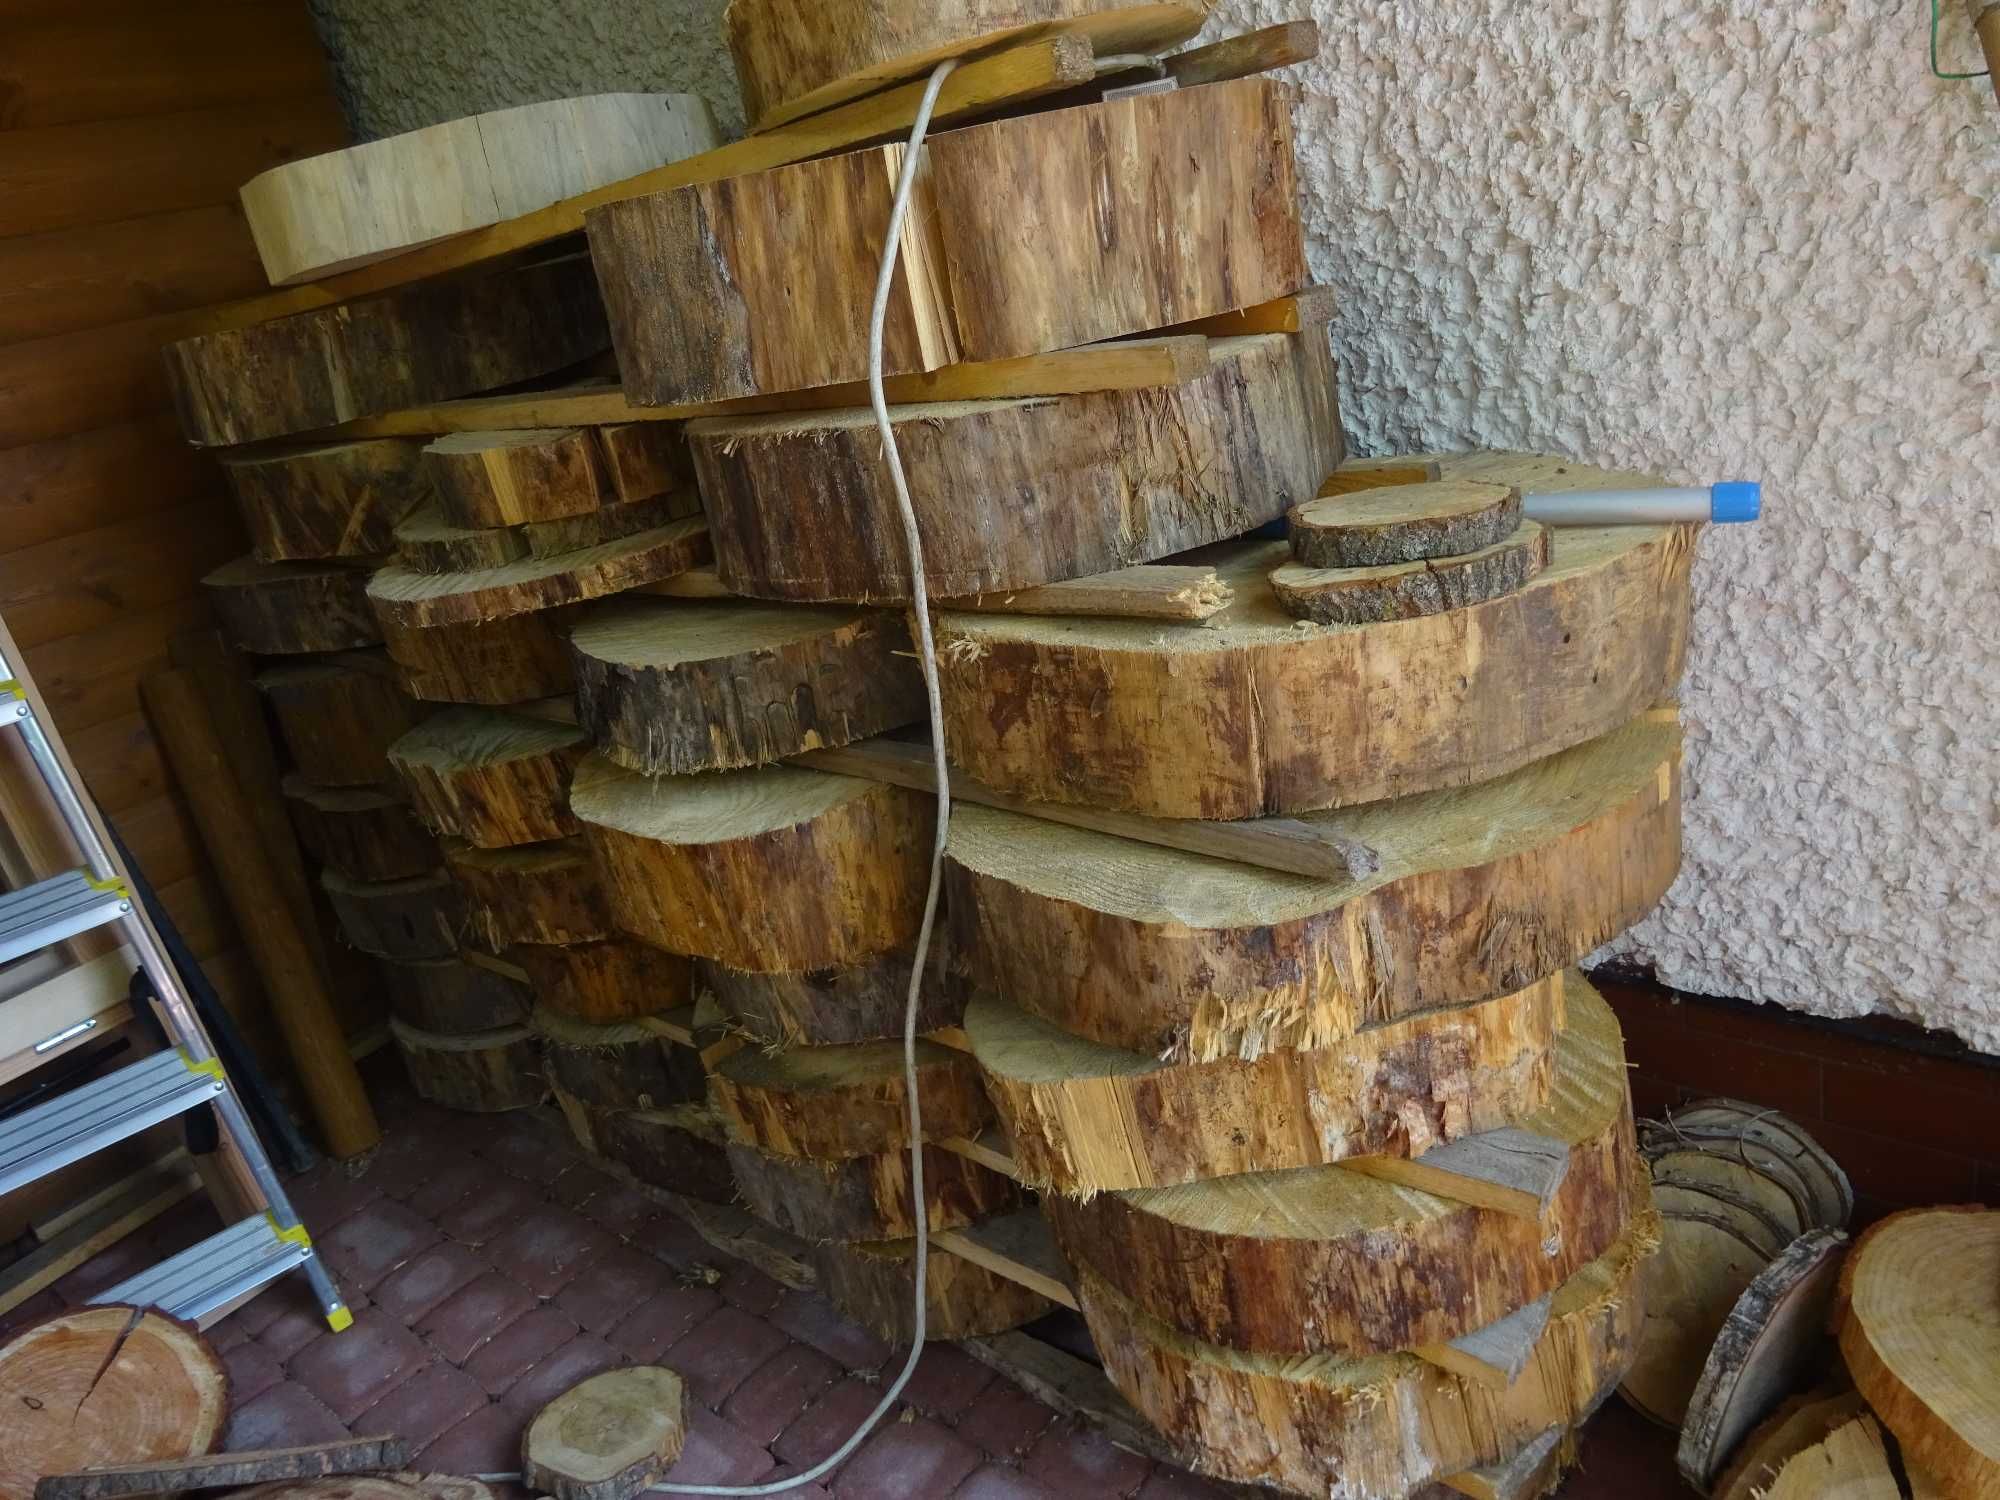 60 cm stolik ogrodowy kawowy drewniany blat pieniek 50 - 55 cm